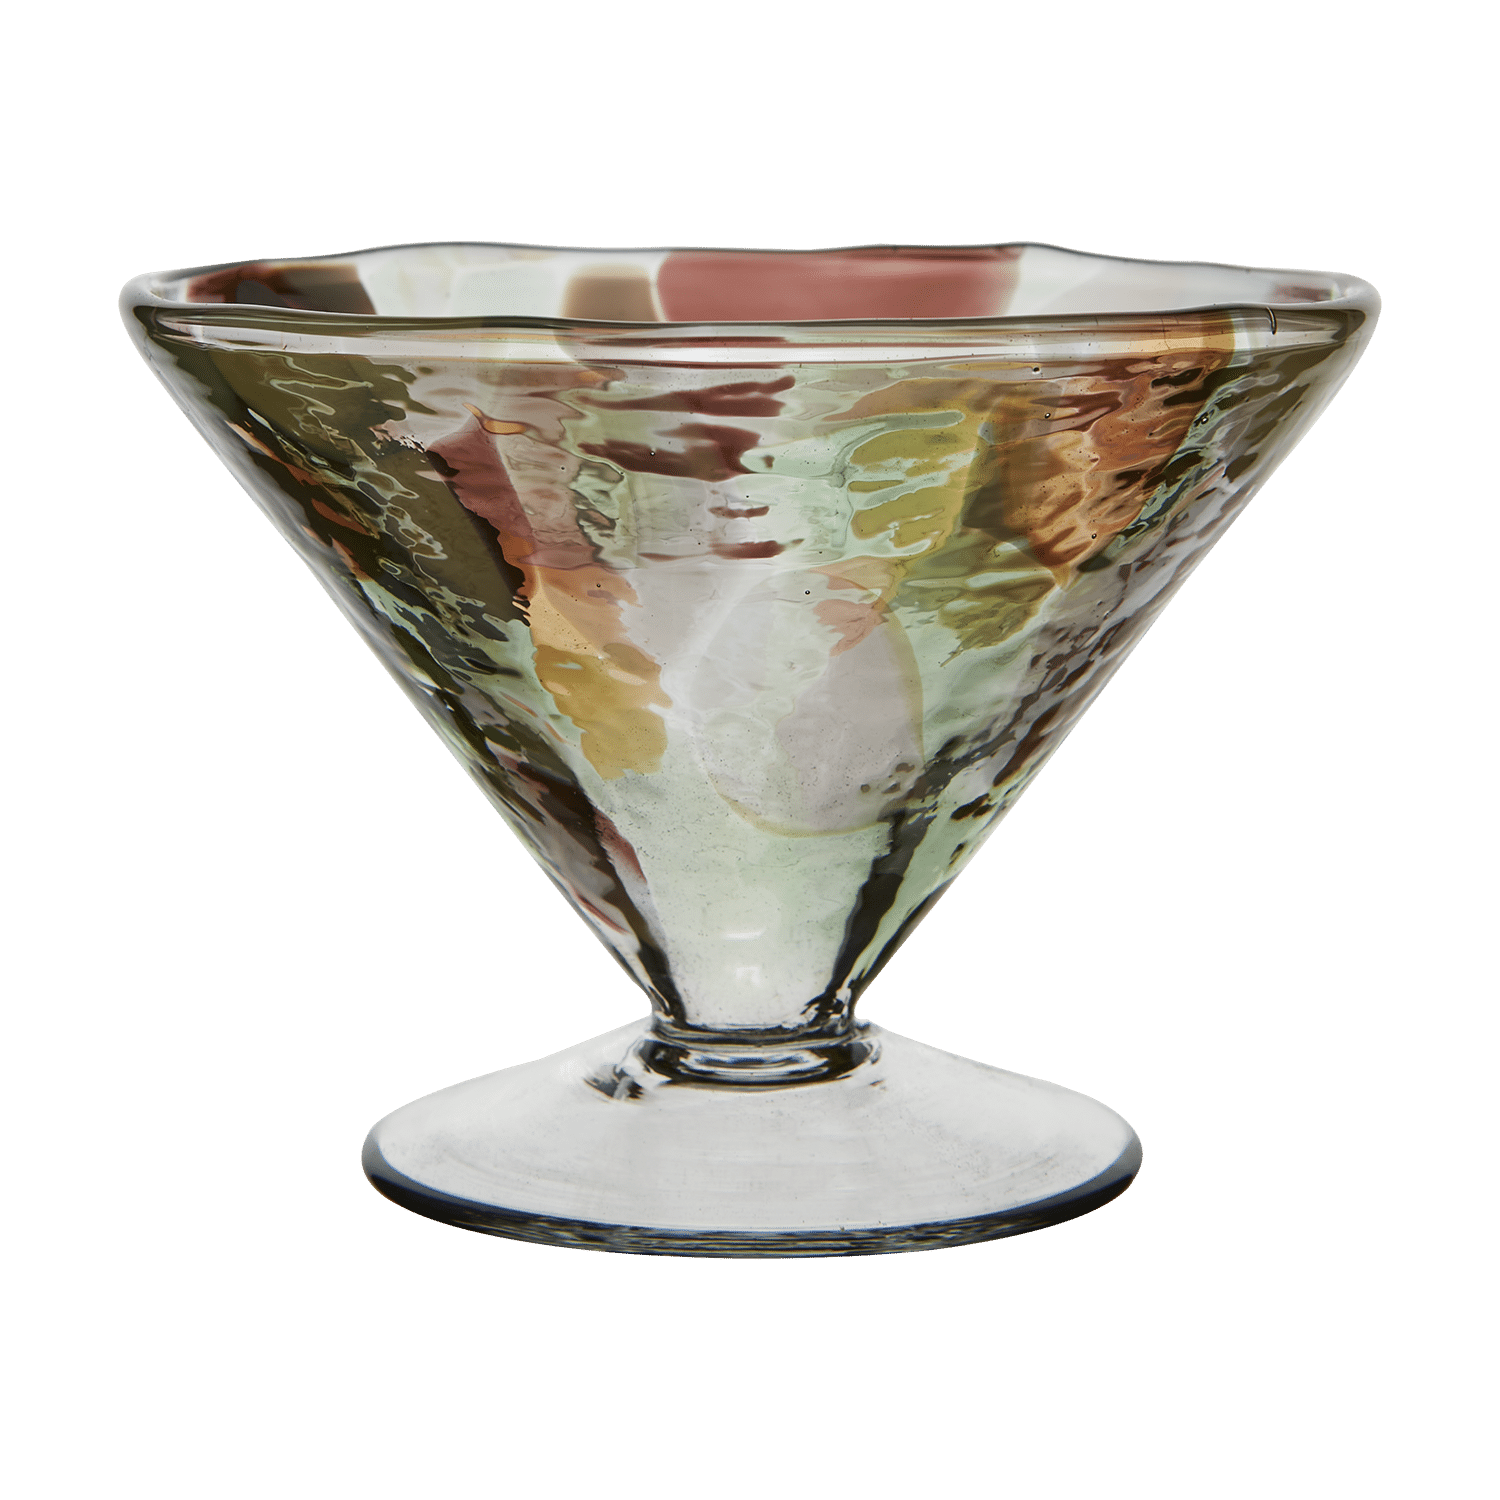 Omslagsbild för “Cocktail / dessertglas flerfärgad”